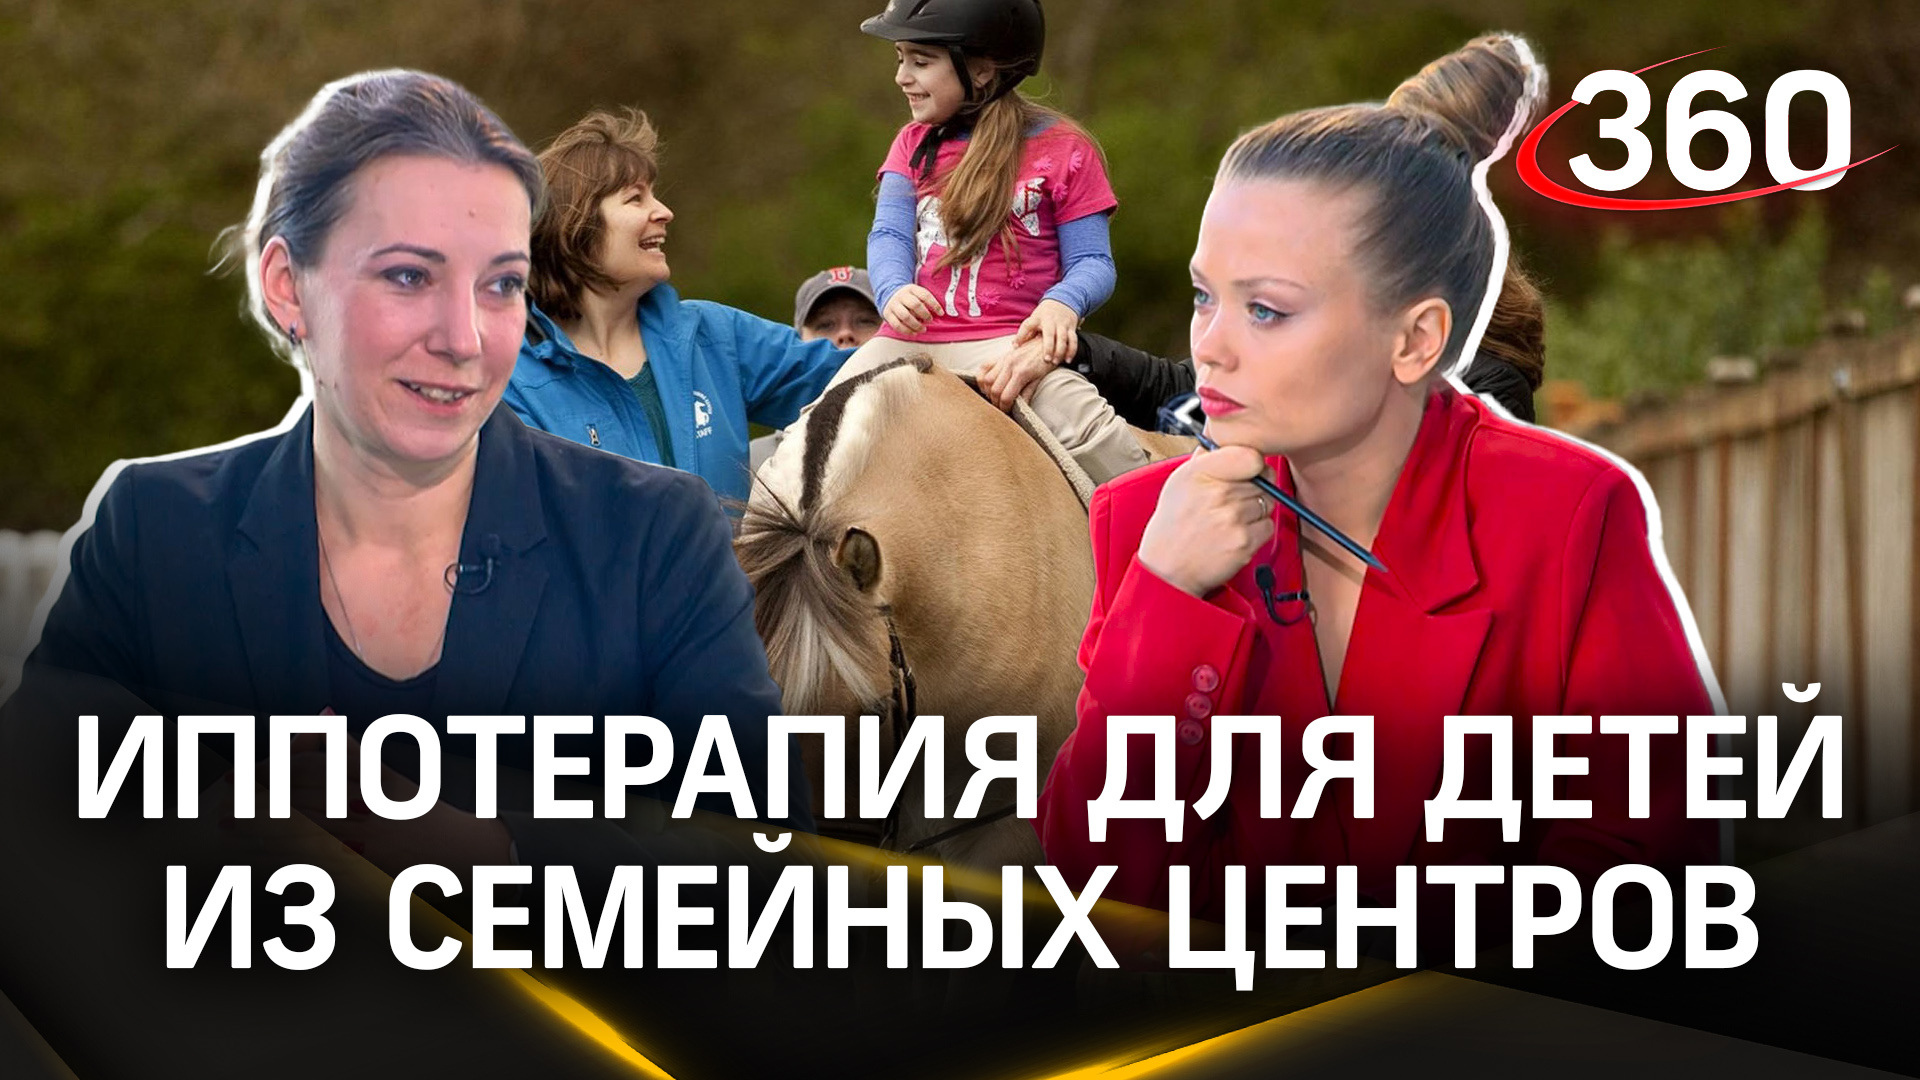 Бесплатный метод реабилитации посредством верховой езды доступен в Московской области